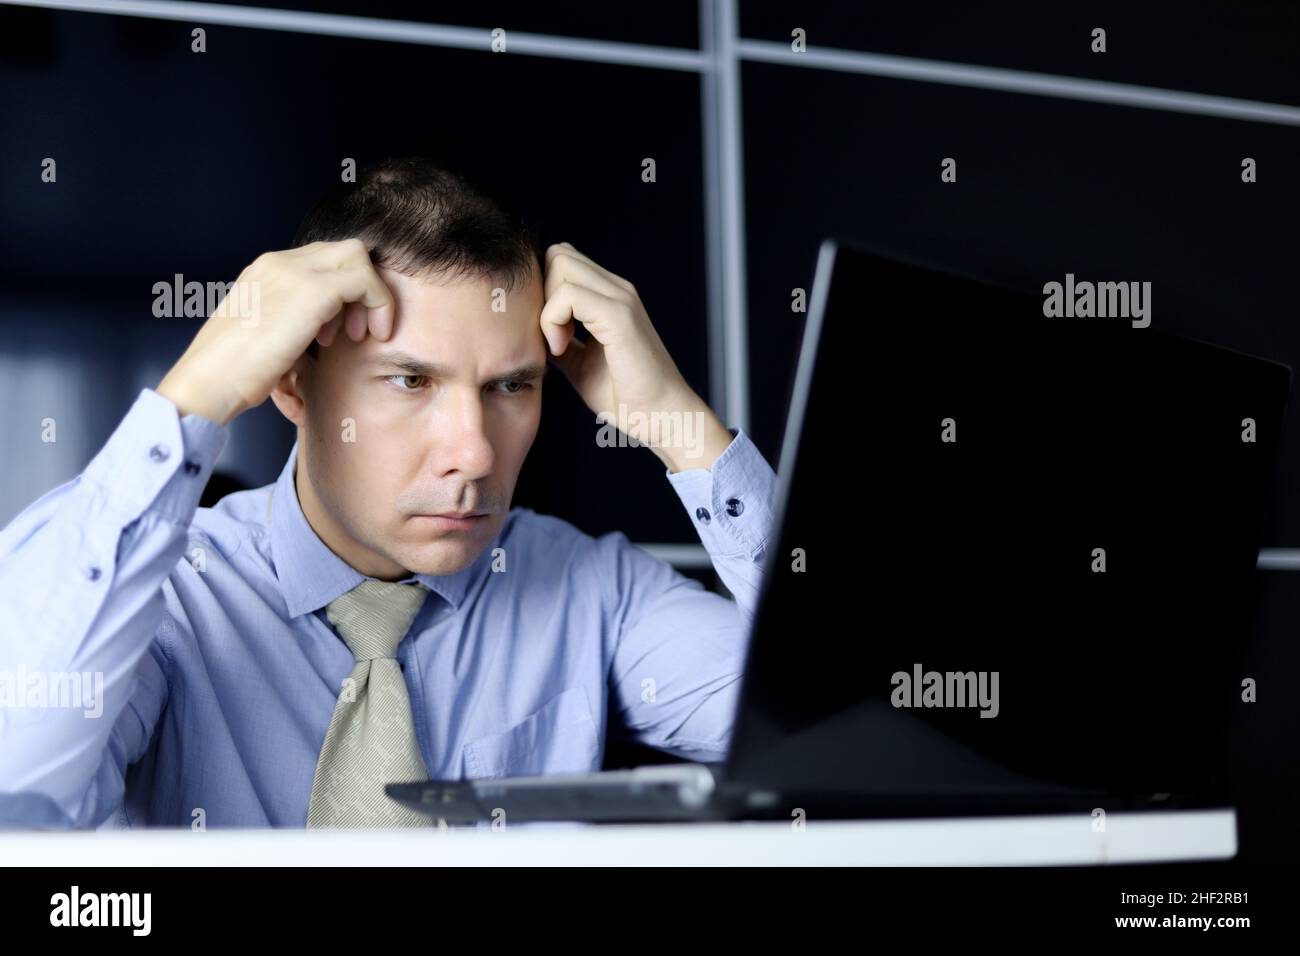 Uomo in ufficio che guarda sconvolto al display del laptop. Concetto di lavoro difficile, cattive notizie, lavoro noioso o mal di testa Foto Stock